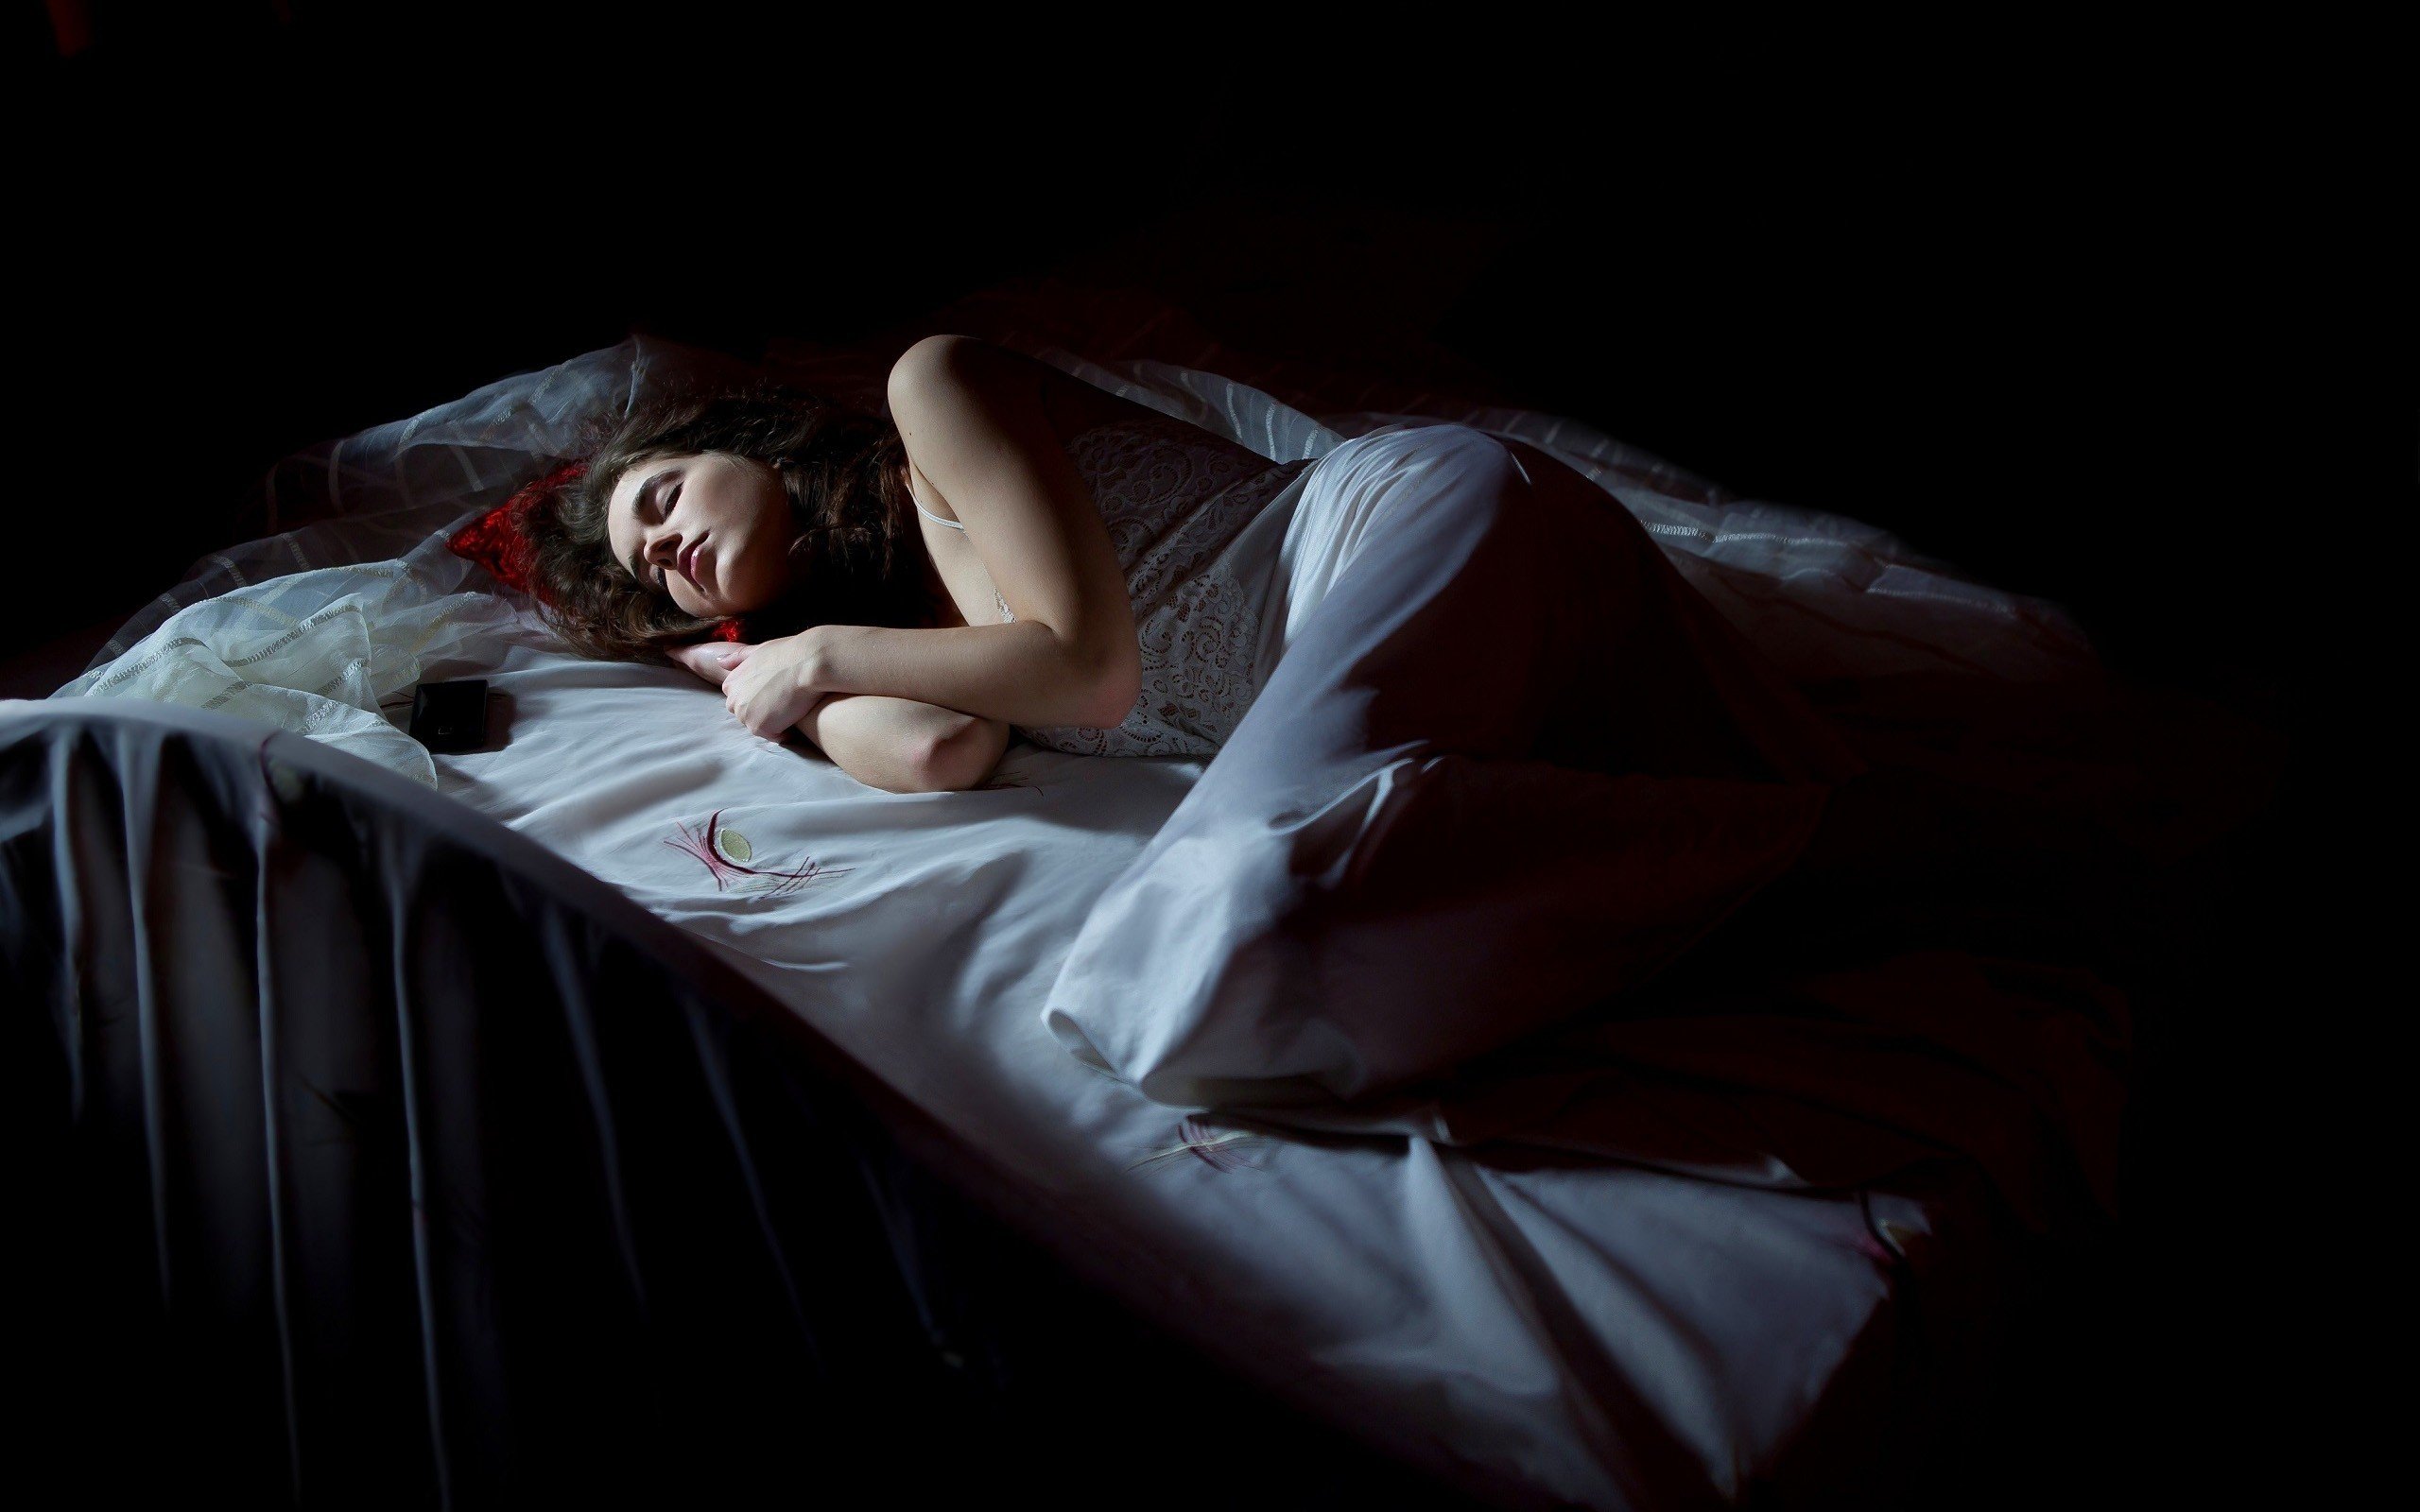 women, Model, Brunette, Long hair, White dress, Sleeping, Closed eyes, In bed, Black background Wallpaper